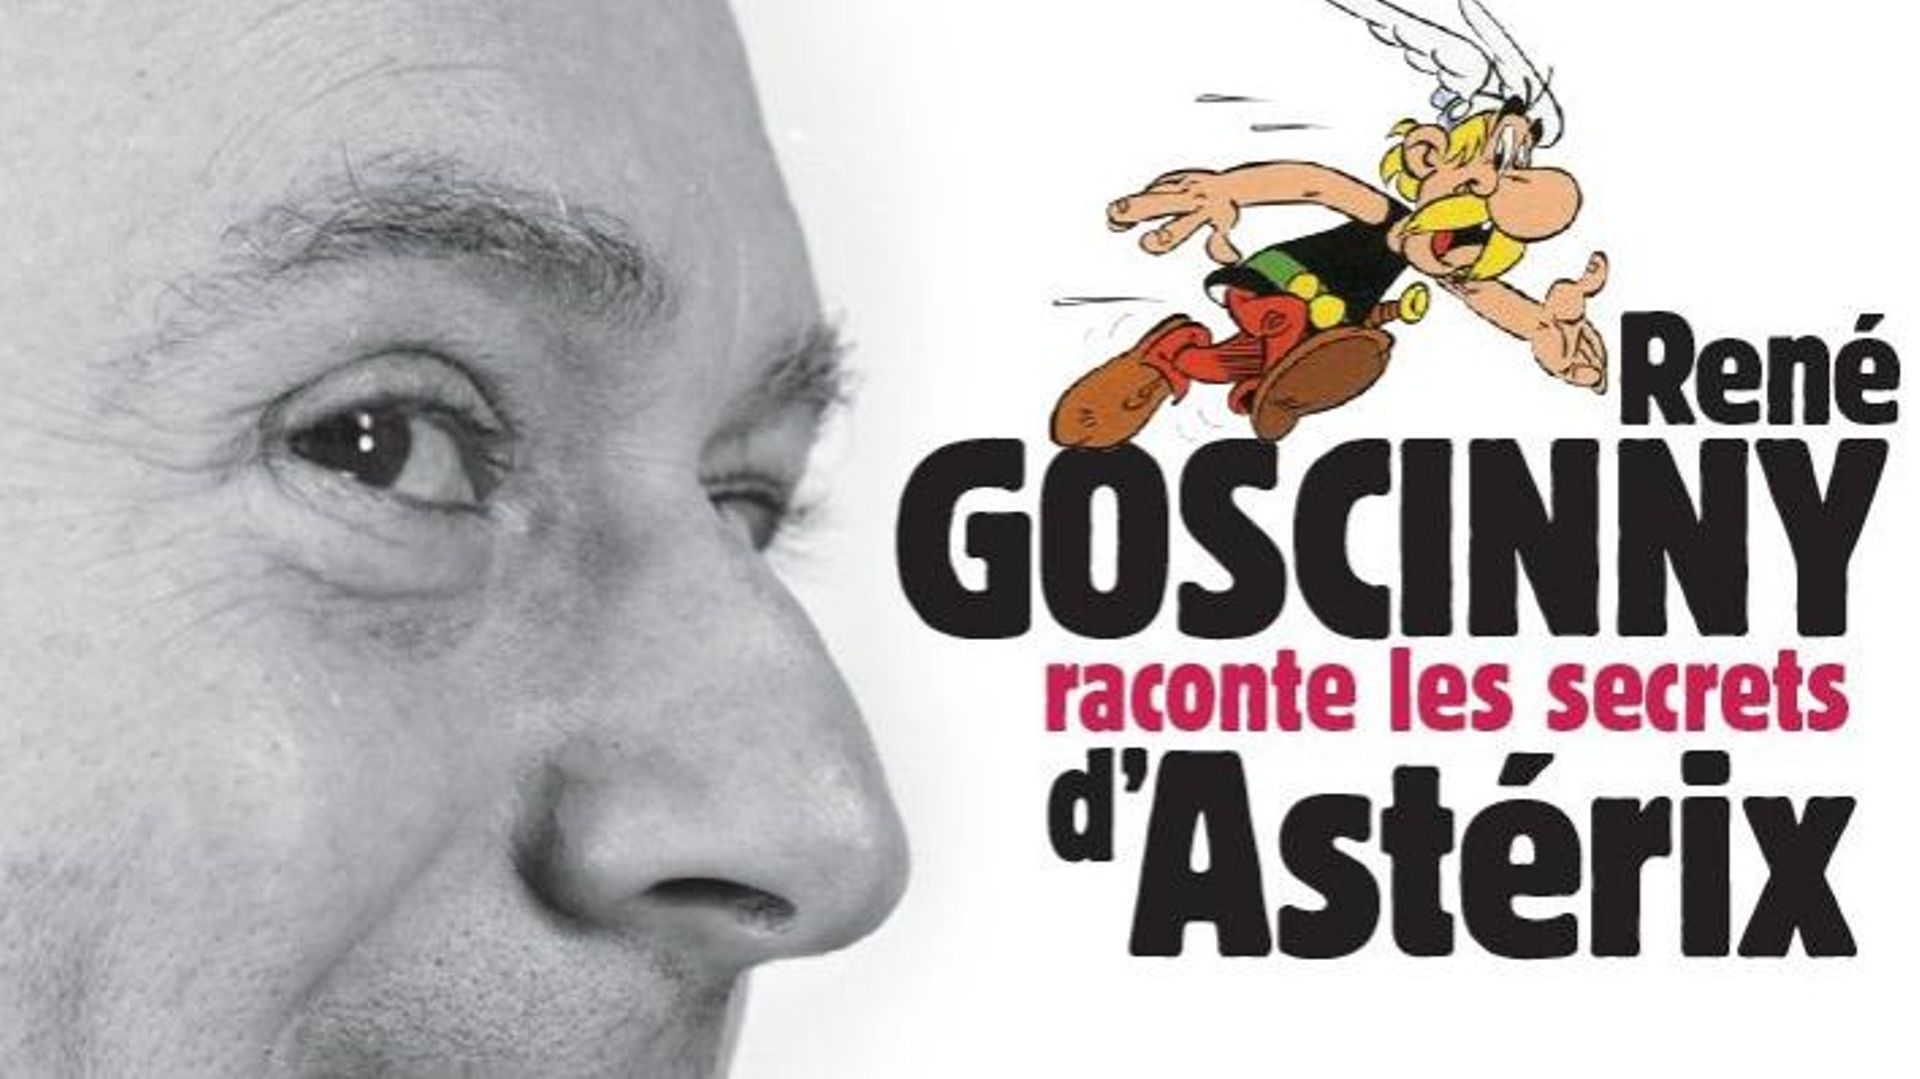 Des anecdotes de René Goscinny compilées dans un livre à paraître en septembre